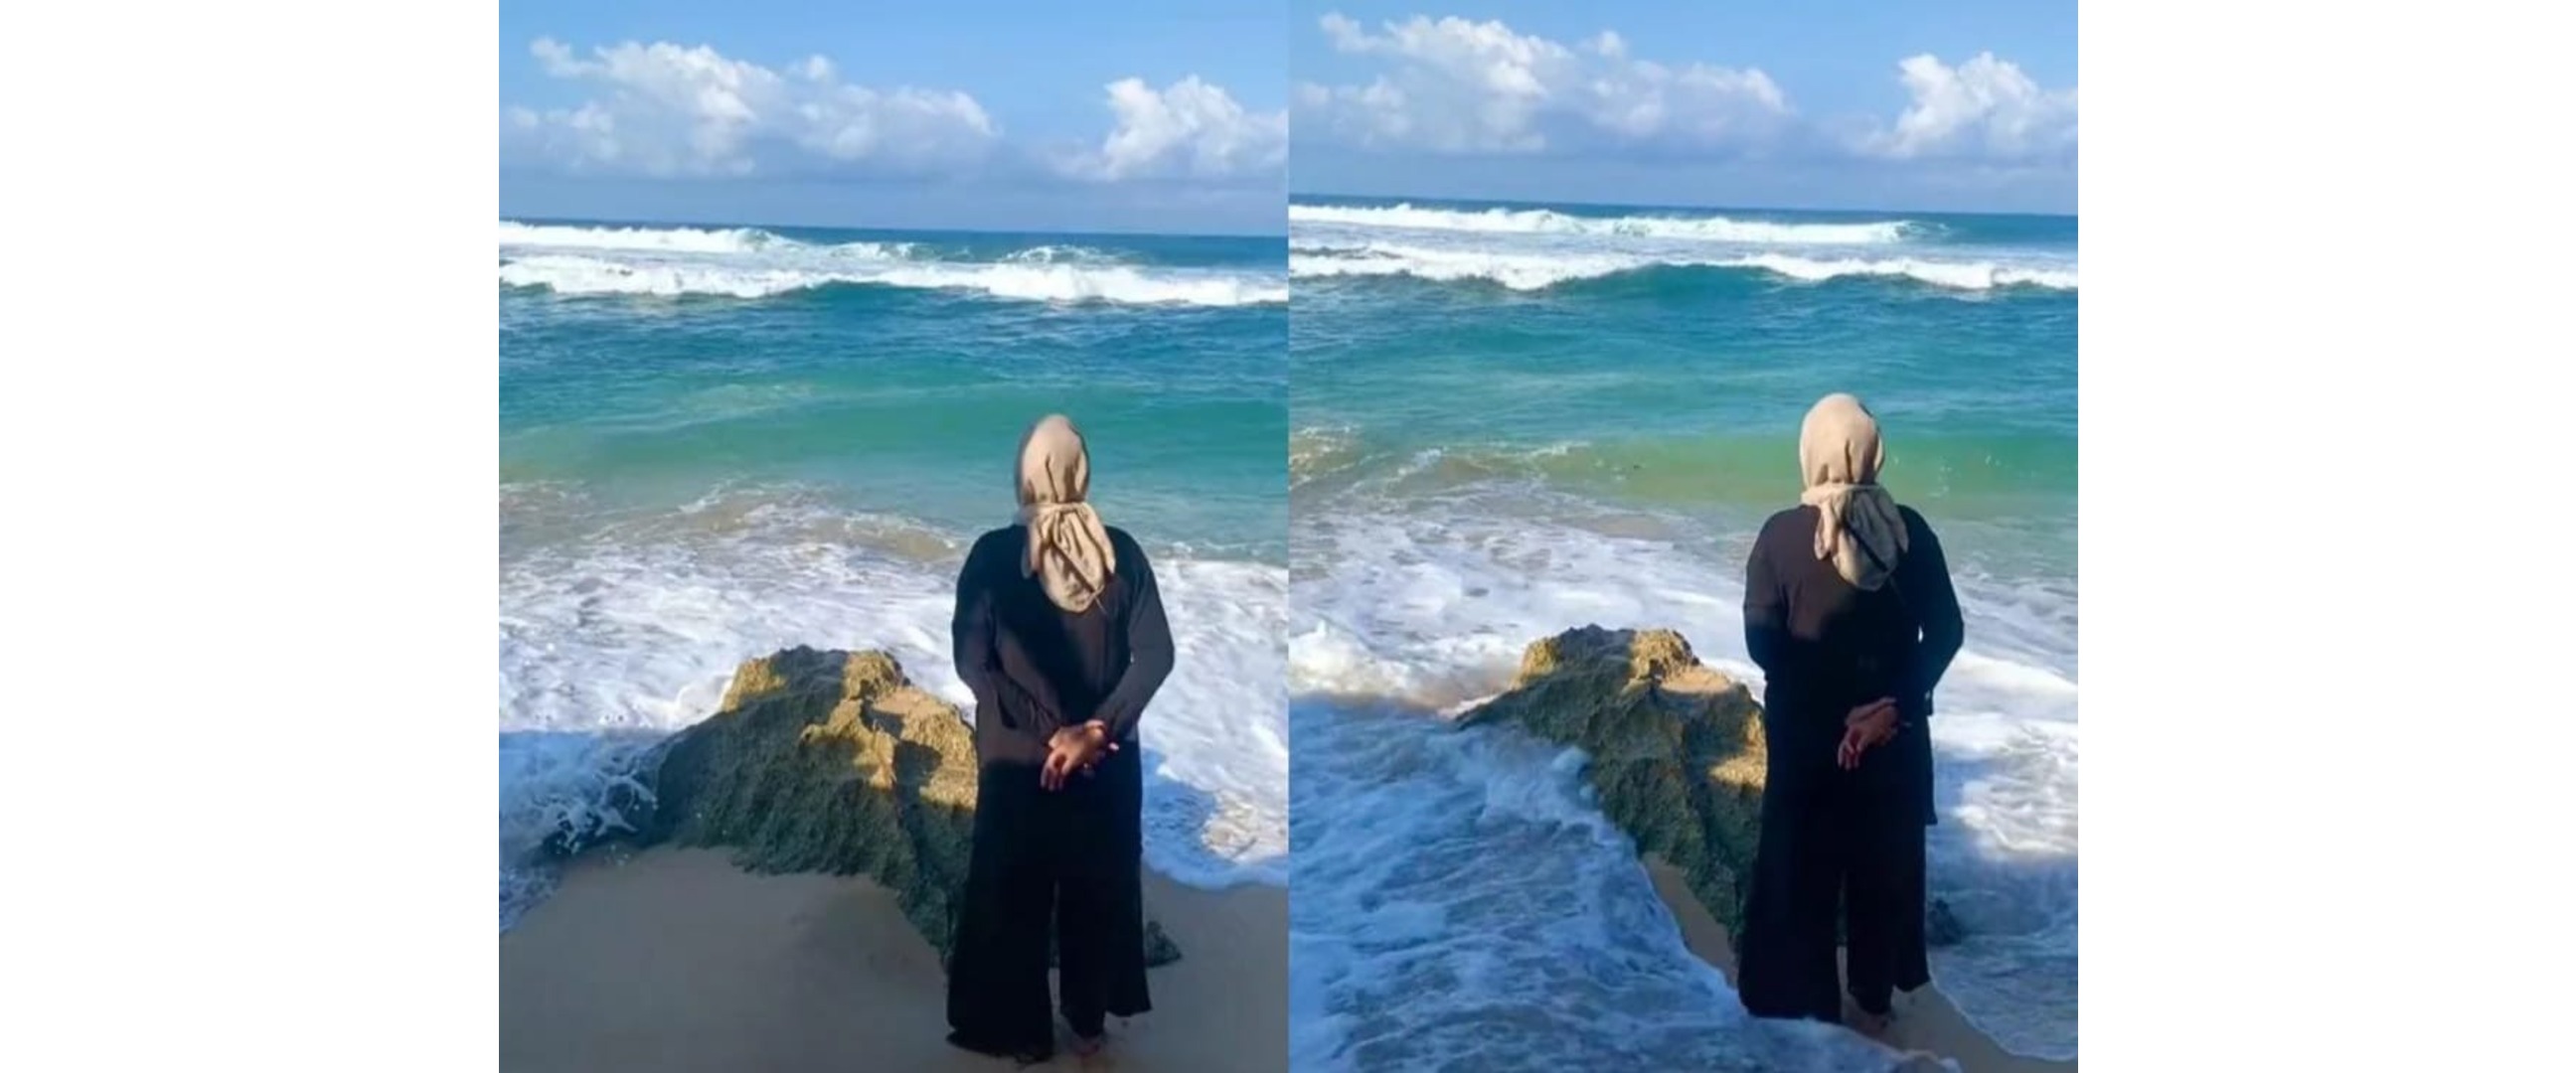 Niatnya healing, momen wanita saat berfoto di pantai ini endingnya gagal estetik parah